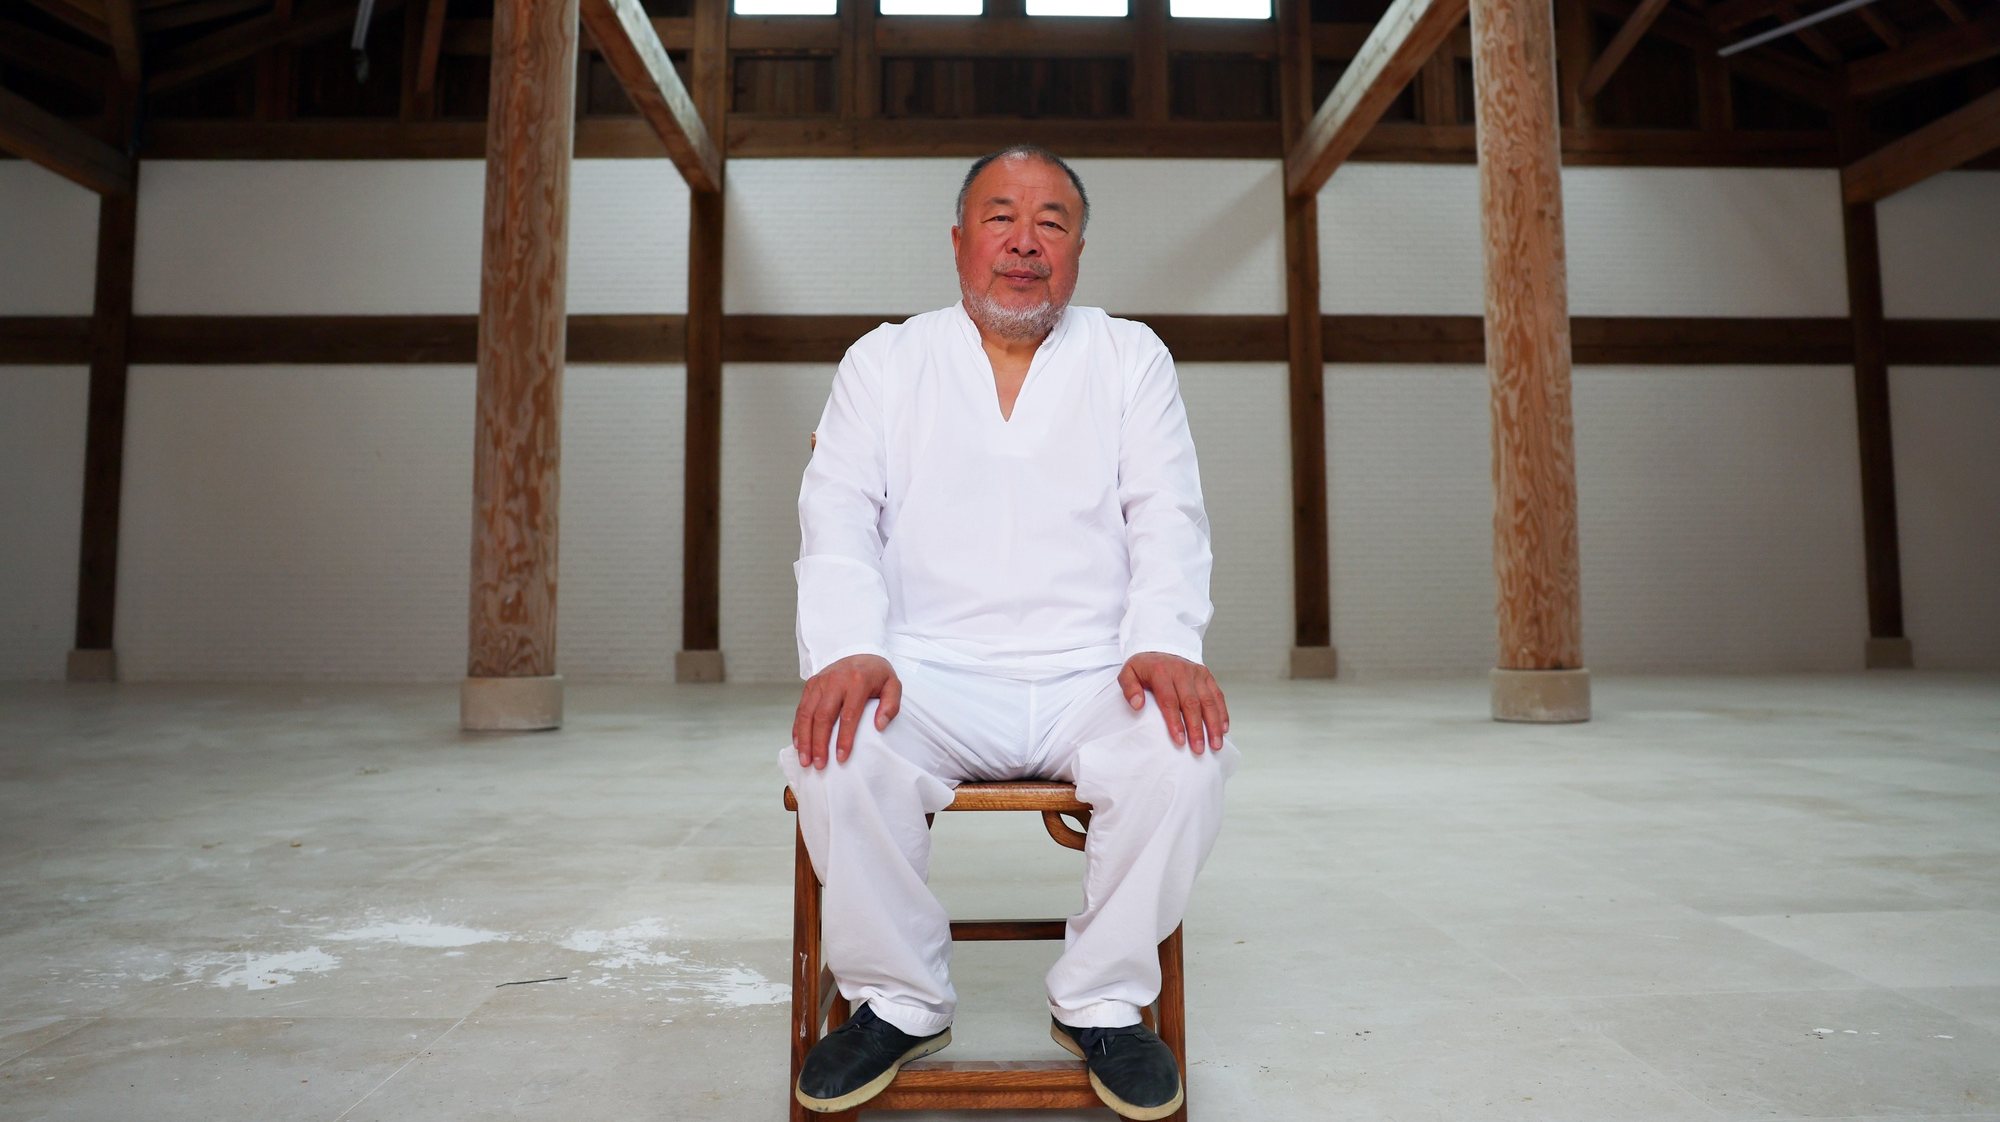 O artista chinês Ai Weiwei argumentou hoje que o Ocidente “já não defende os direitos humanos” como quer fazer crer, exemplificando com as guerras na Ucrânia e no Médio Oriente, com os quais os países ocidentais lucram, Montemor-o-Novo, 13 de maio de 2024. Em entrevista à agência Lusa, no seu novo ateliê em construção na herdade no Alentejo onde passou a residir nos últimos anos, no concelho de Montemor-o-Novo (Évora), Ai Weiwei dá como exemplos desse seu olhar crítico em direção ao ocidente “as duas guerras que estão a acontecer”. (ACOMPANHA TEXTO DE 13 DE MAIO DE 2024). NUNO VEIGA/LUSA